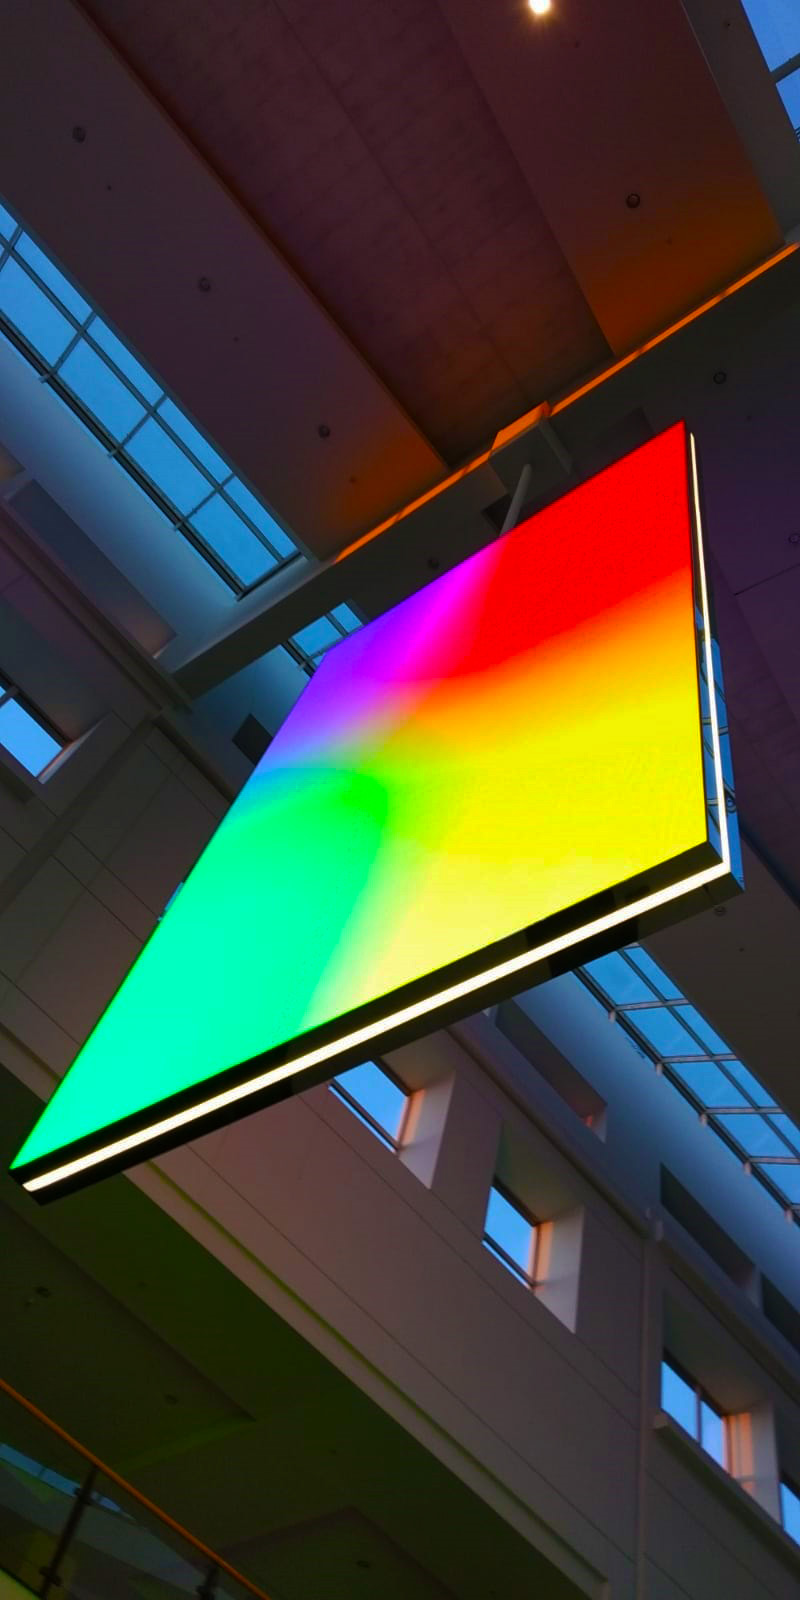 Podwieszany dwustronny ekran LED zainstalowany we wnętrzu galerii Westfield Arkadia w Warszawie